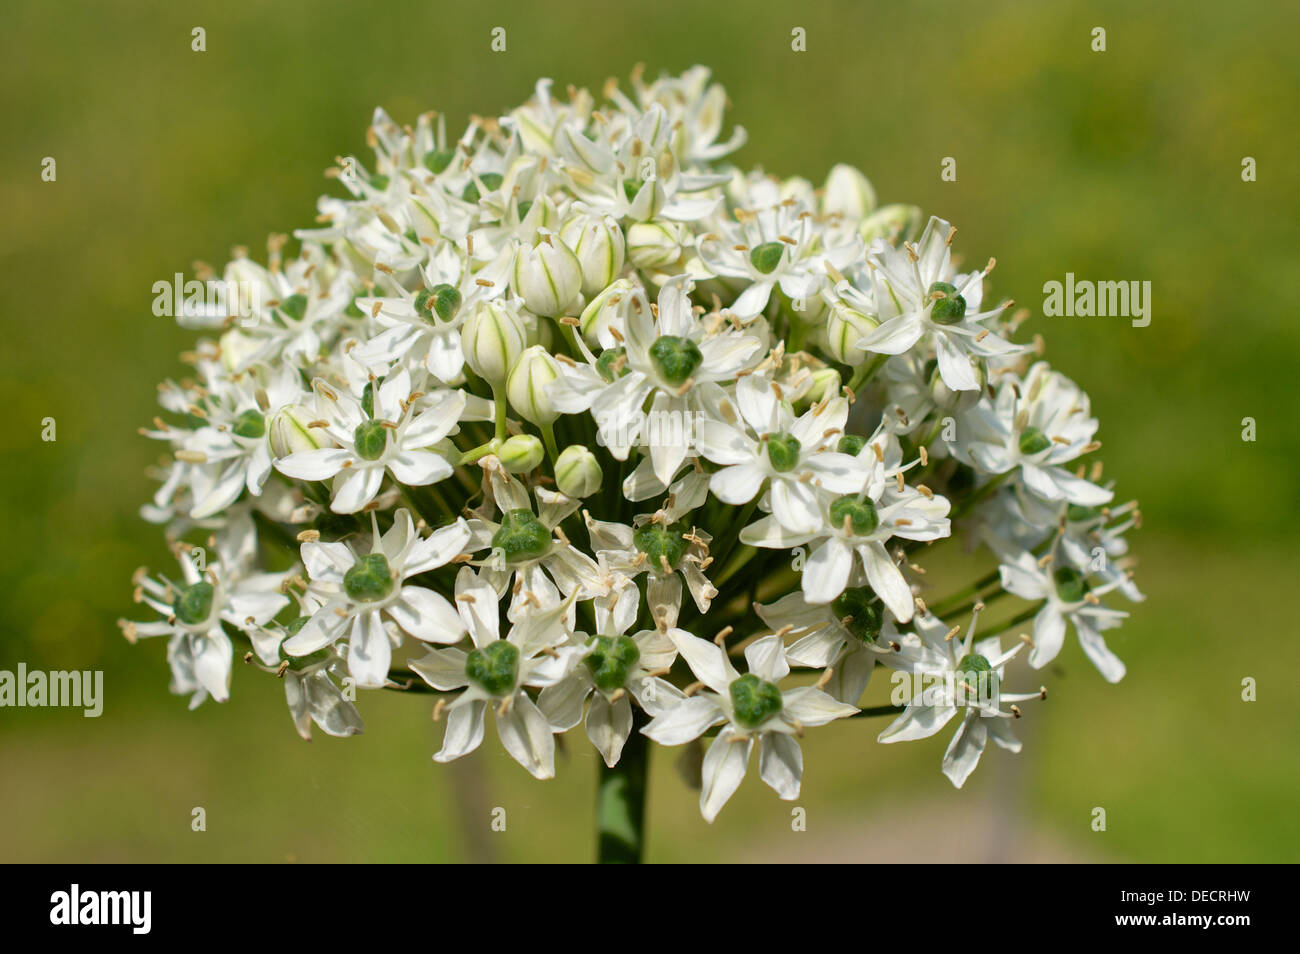 Allium nigrum single flower head Stock Photo